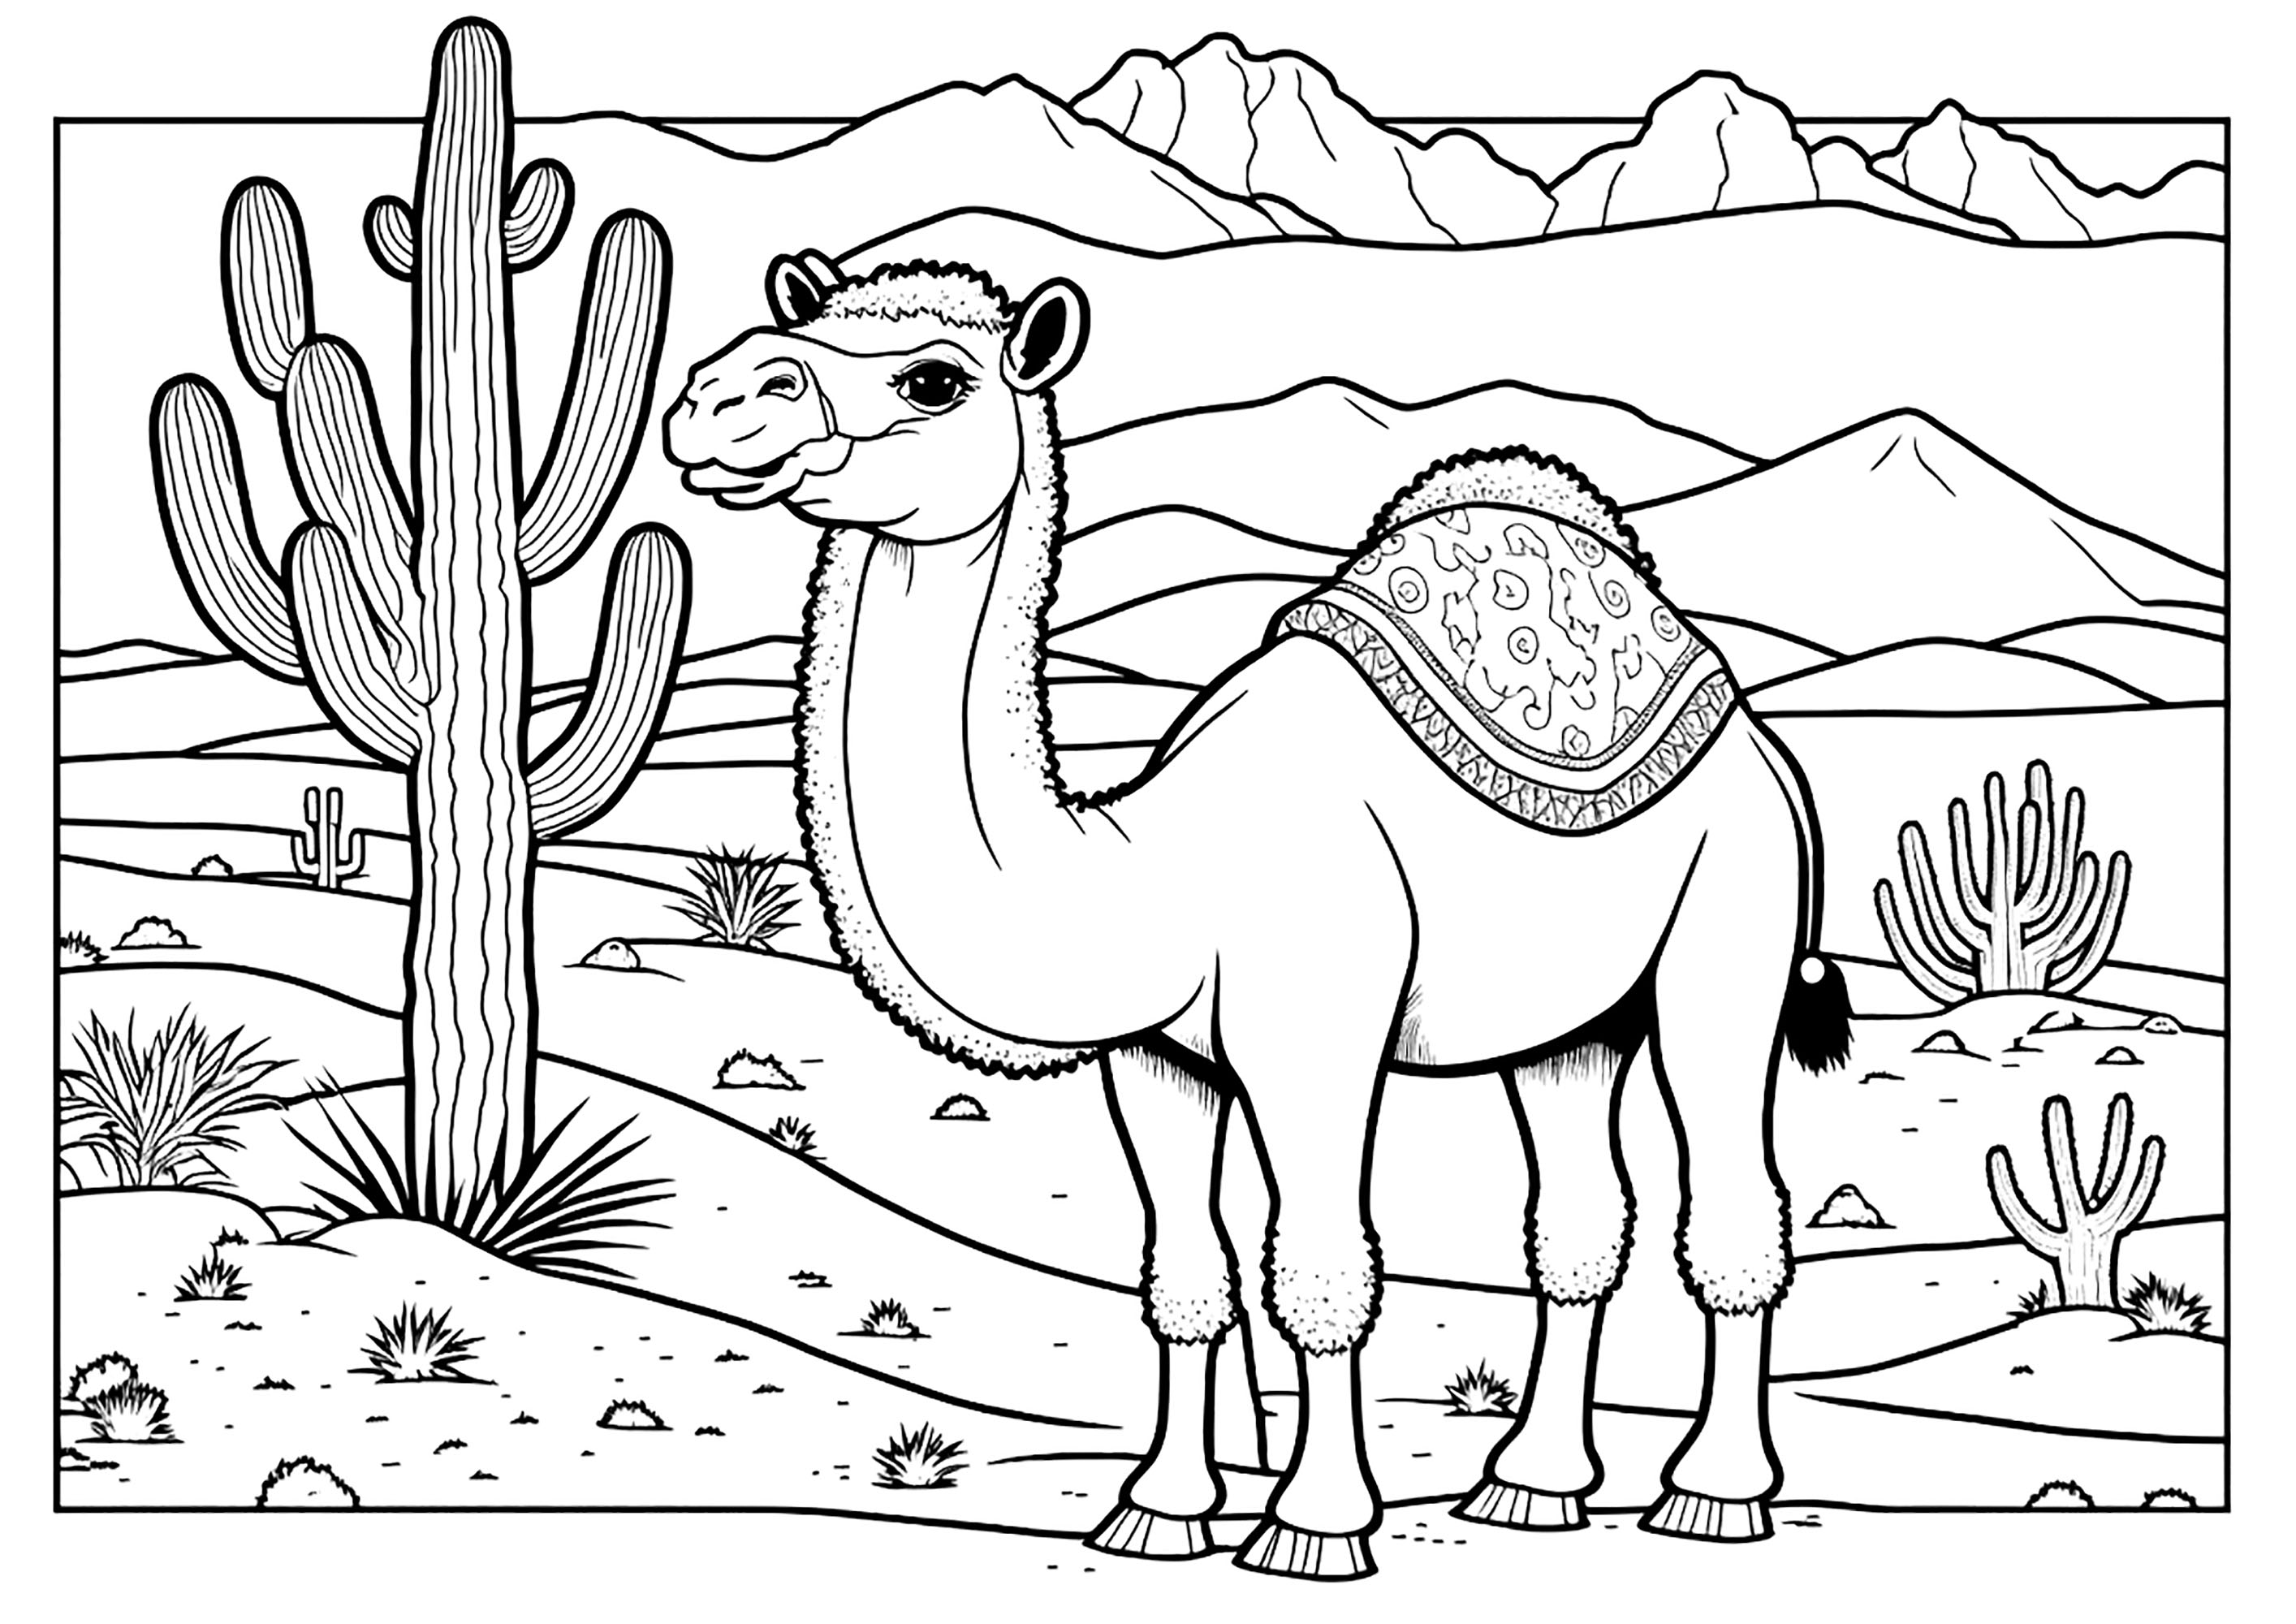 Dromadaire dans le désert, avec un gros cactus. Ce beau dromadaire est debout sur le sable chaud, avec ses longues pattes et son cou allongé. On voit des dunes de sable et des montagnes à l'arrière-plan. Un gros cactus se dresse majestueusement à gauche du dromadaire.